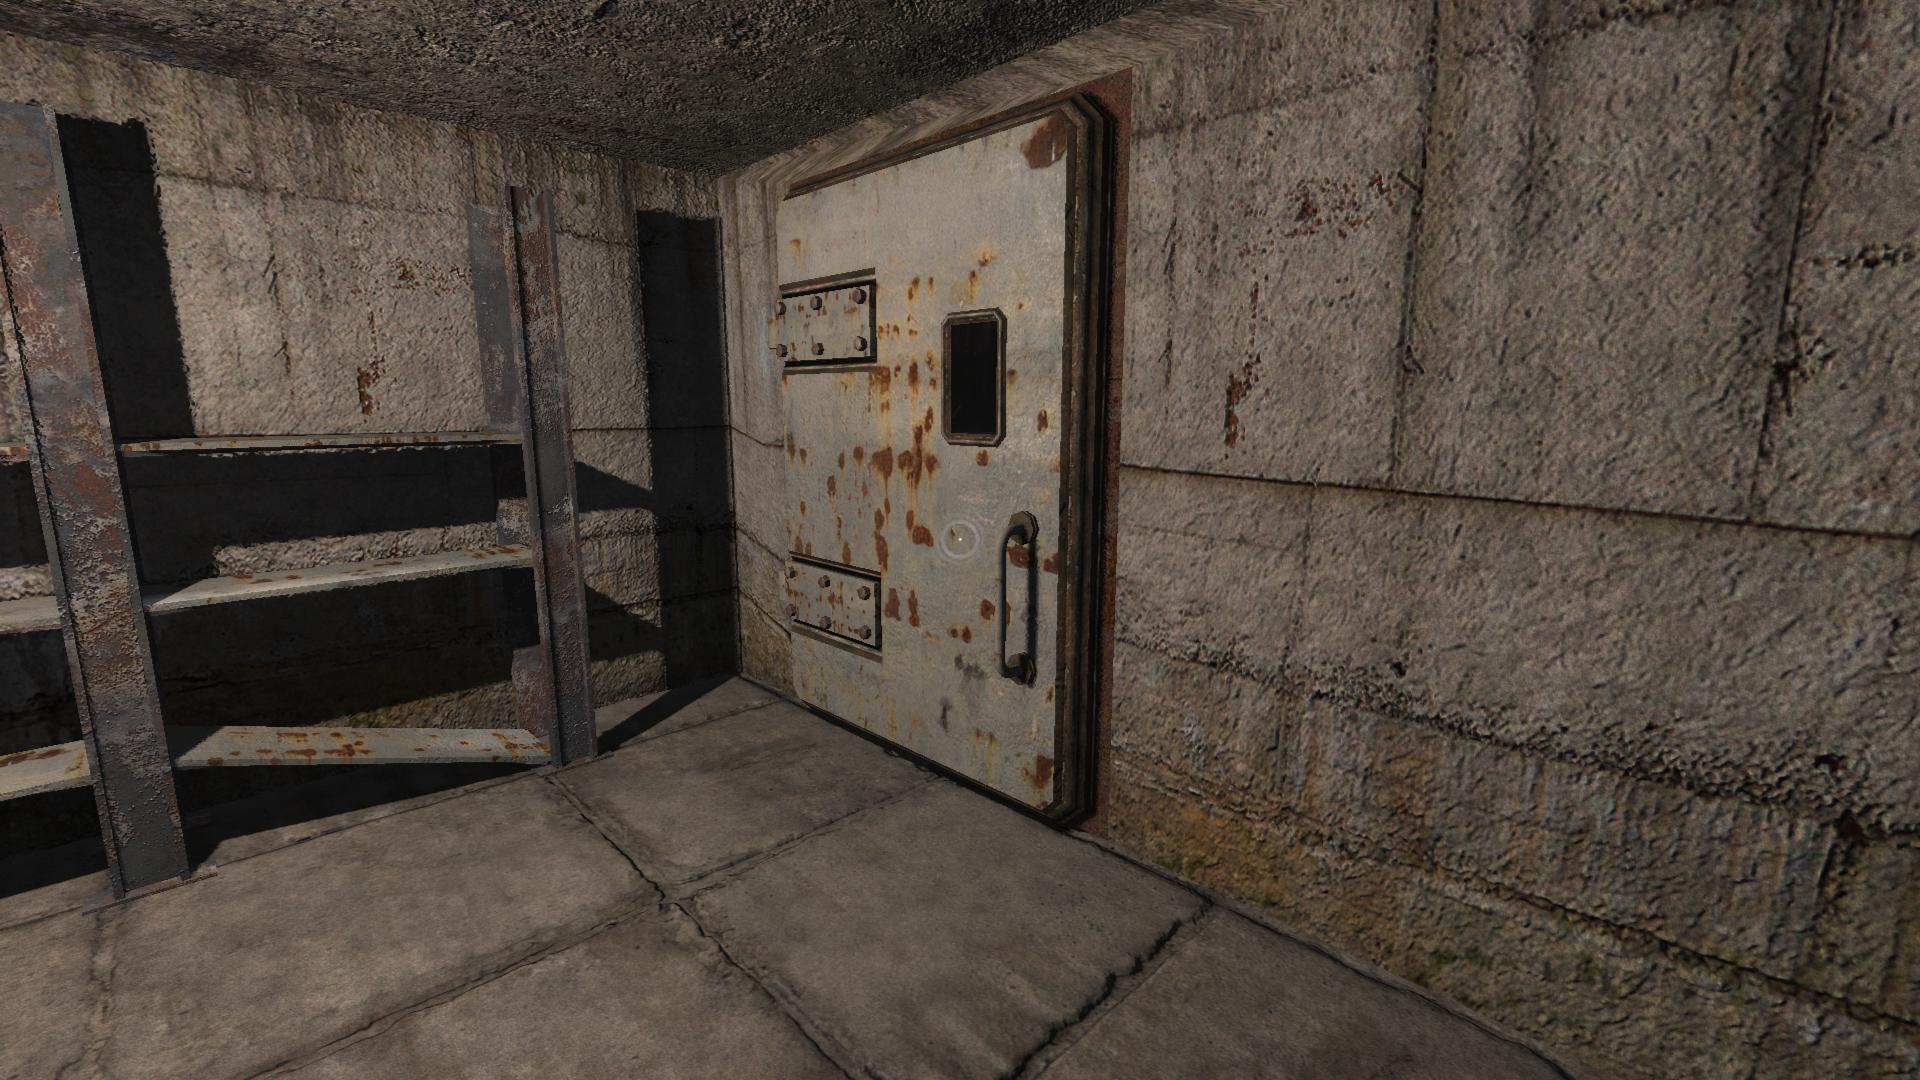 Дверь в игре сталкер. Сталкер лаборатория х-18 код от 2 двери. Сталкер тень Чернобыля коды от дверей в лаборатории x-18. Лаборатория x18 тень Чернобыля. Лаборатория x25 сталкер.